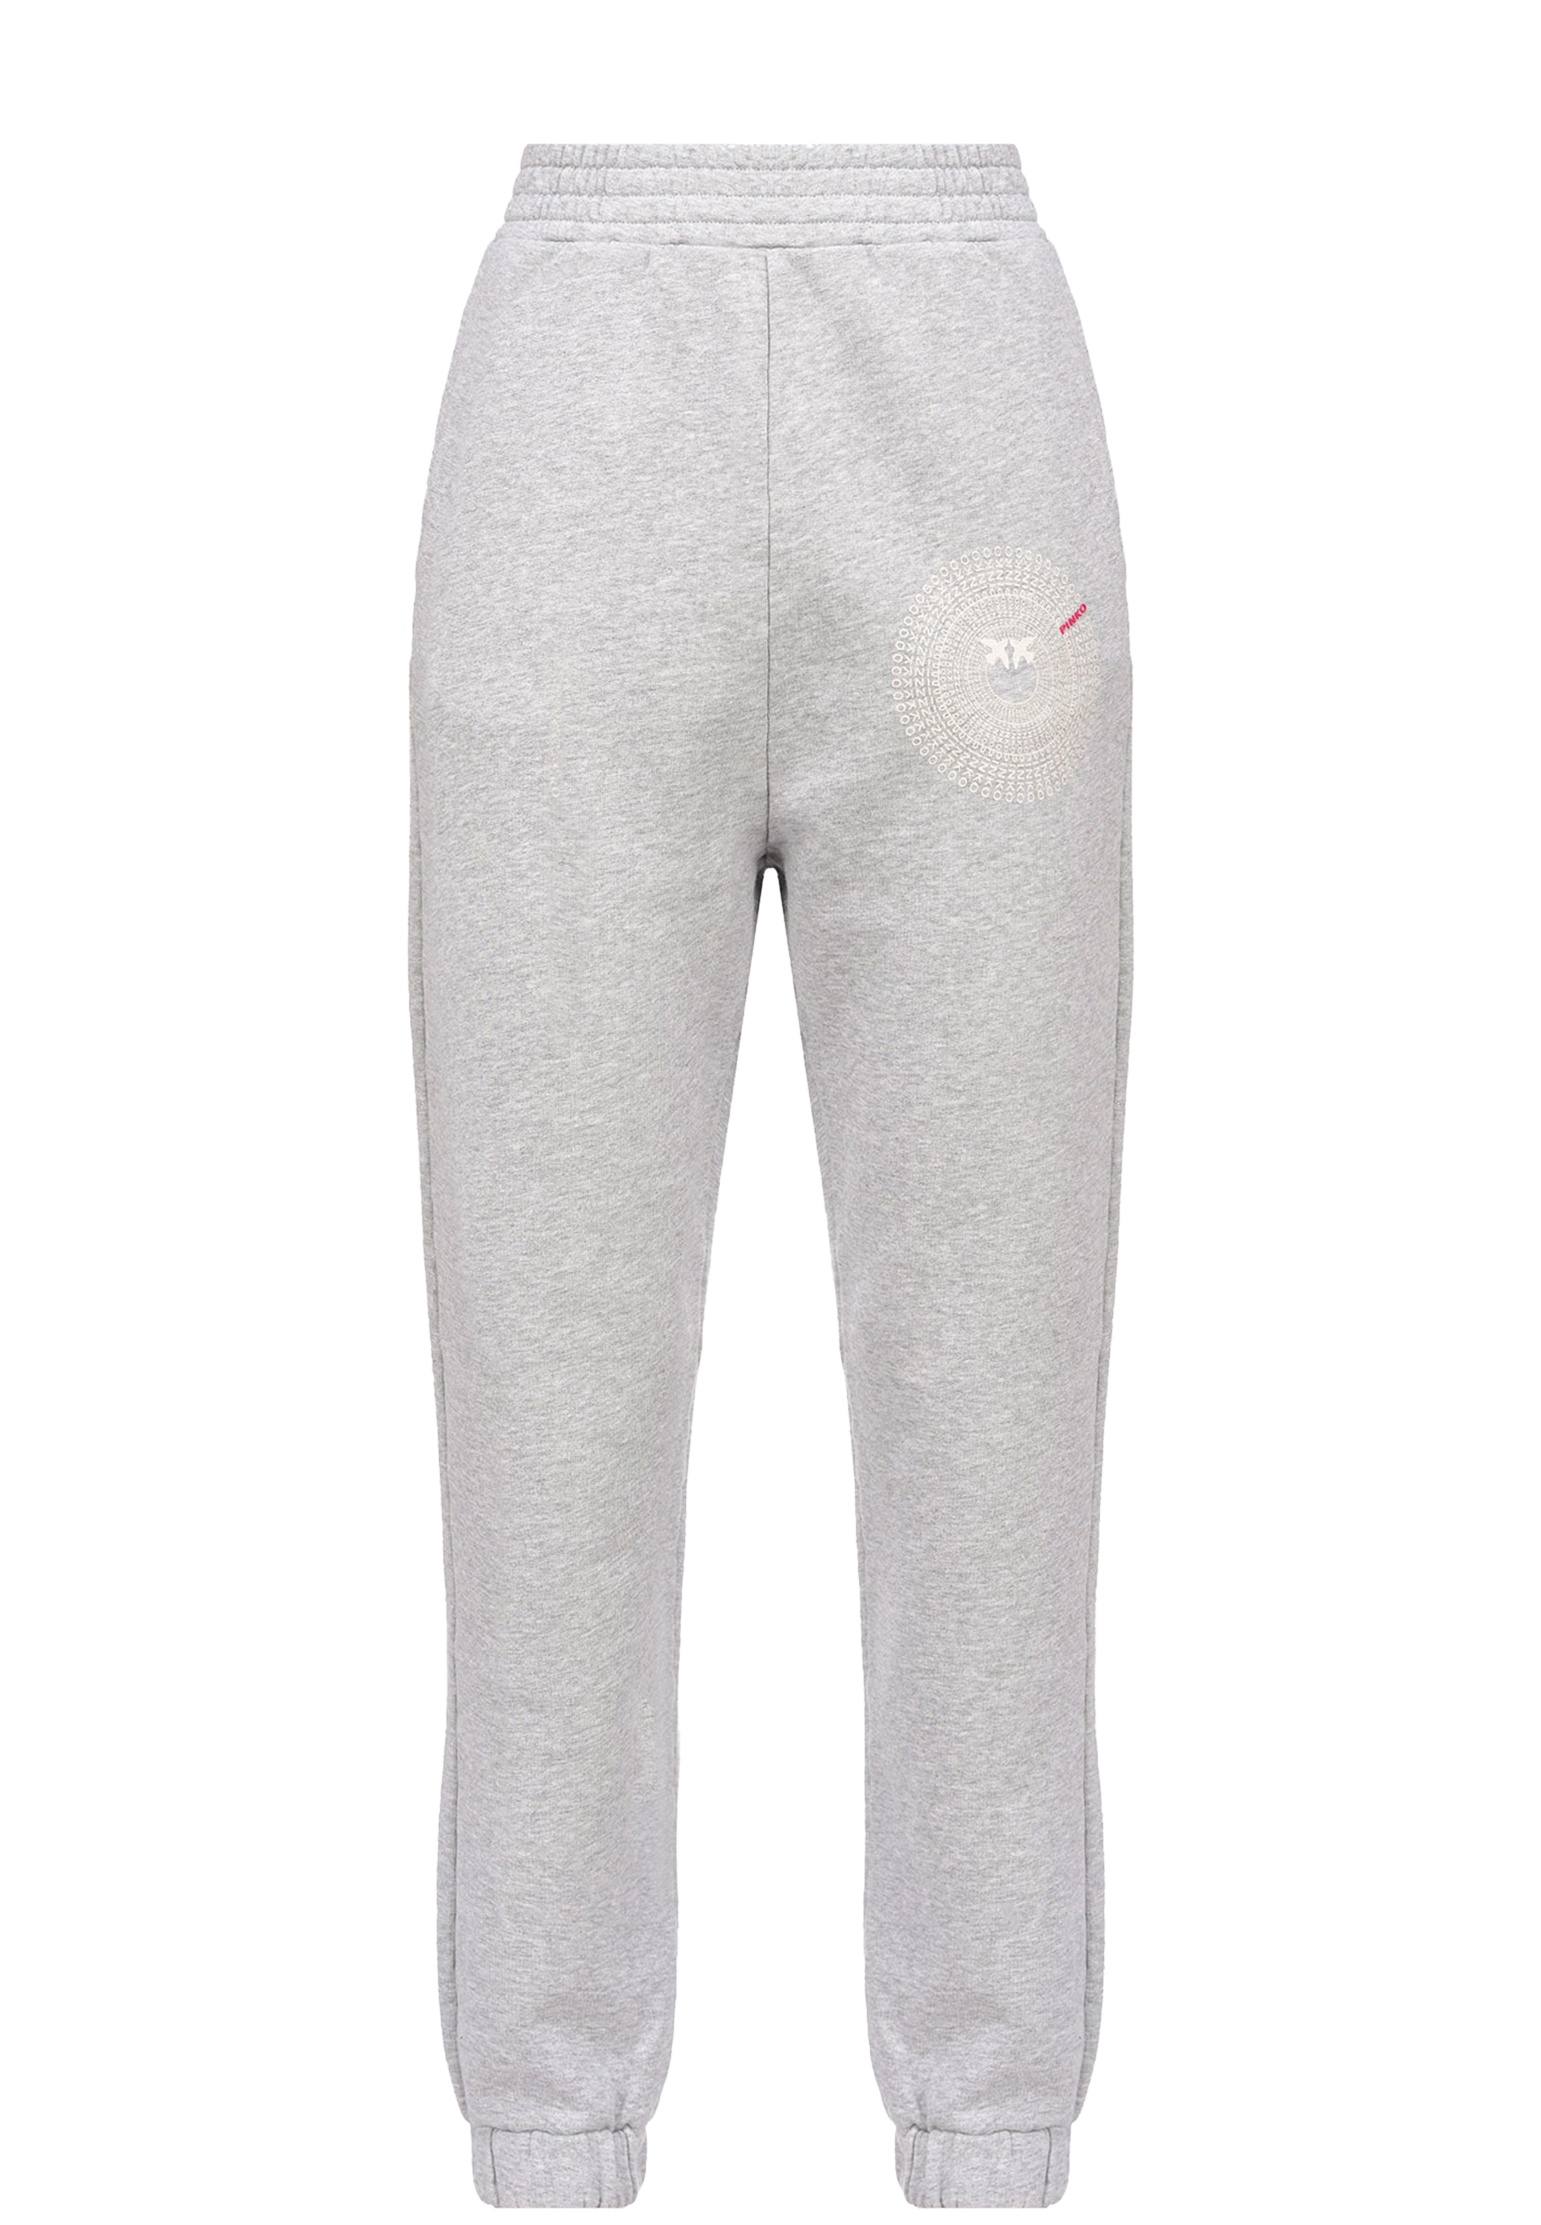 Спортивные брюки женские 136957 серые M Pinko. Цвет: серый